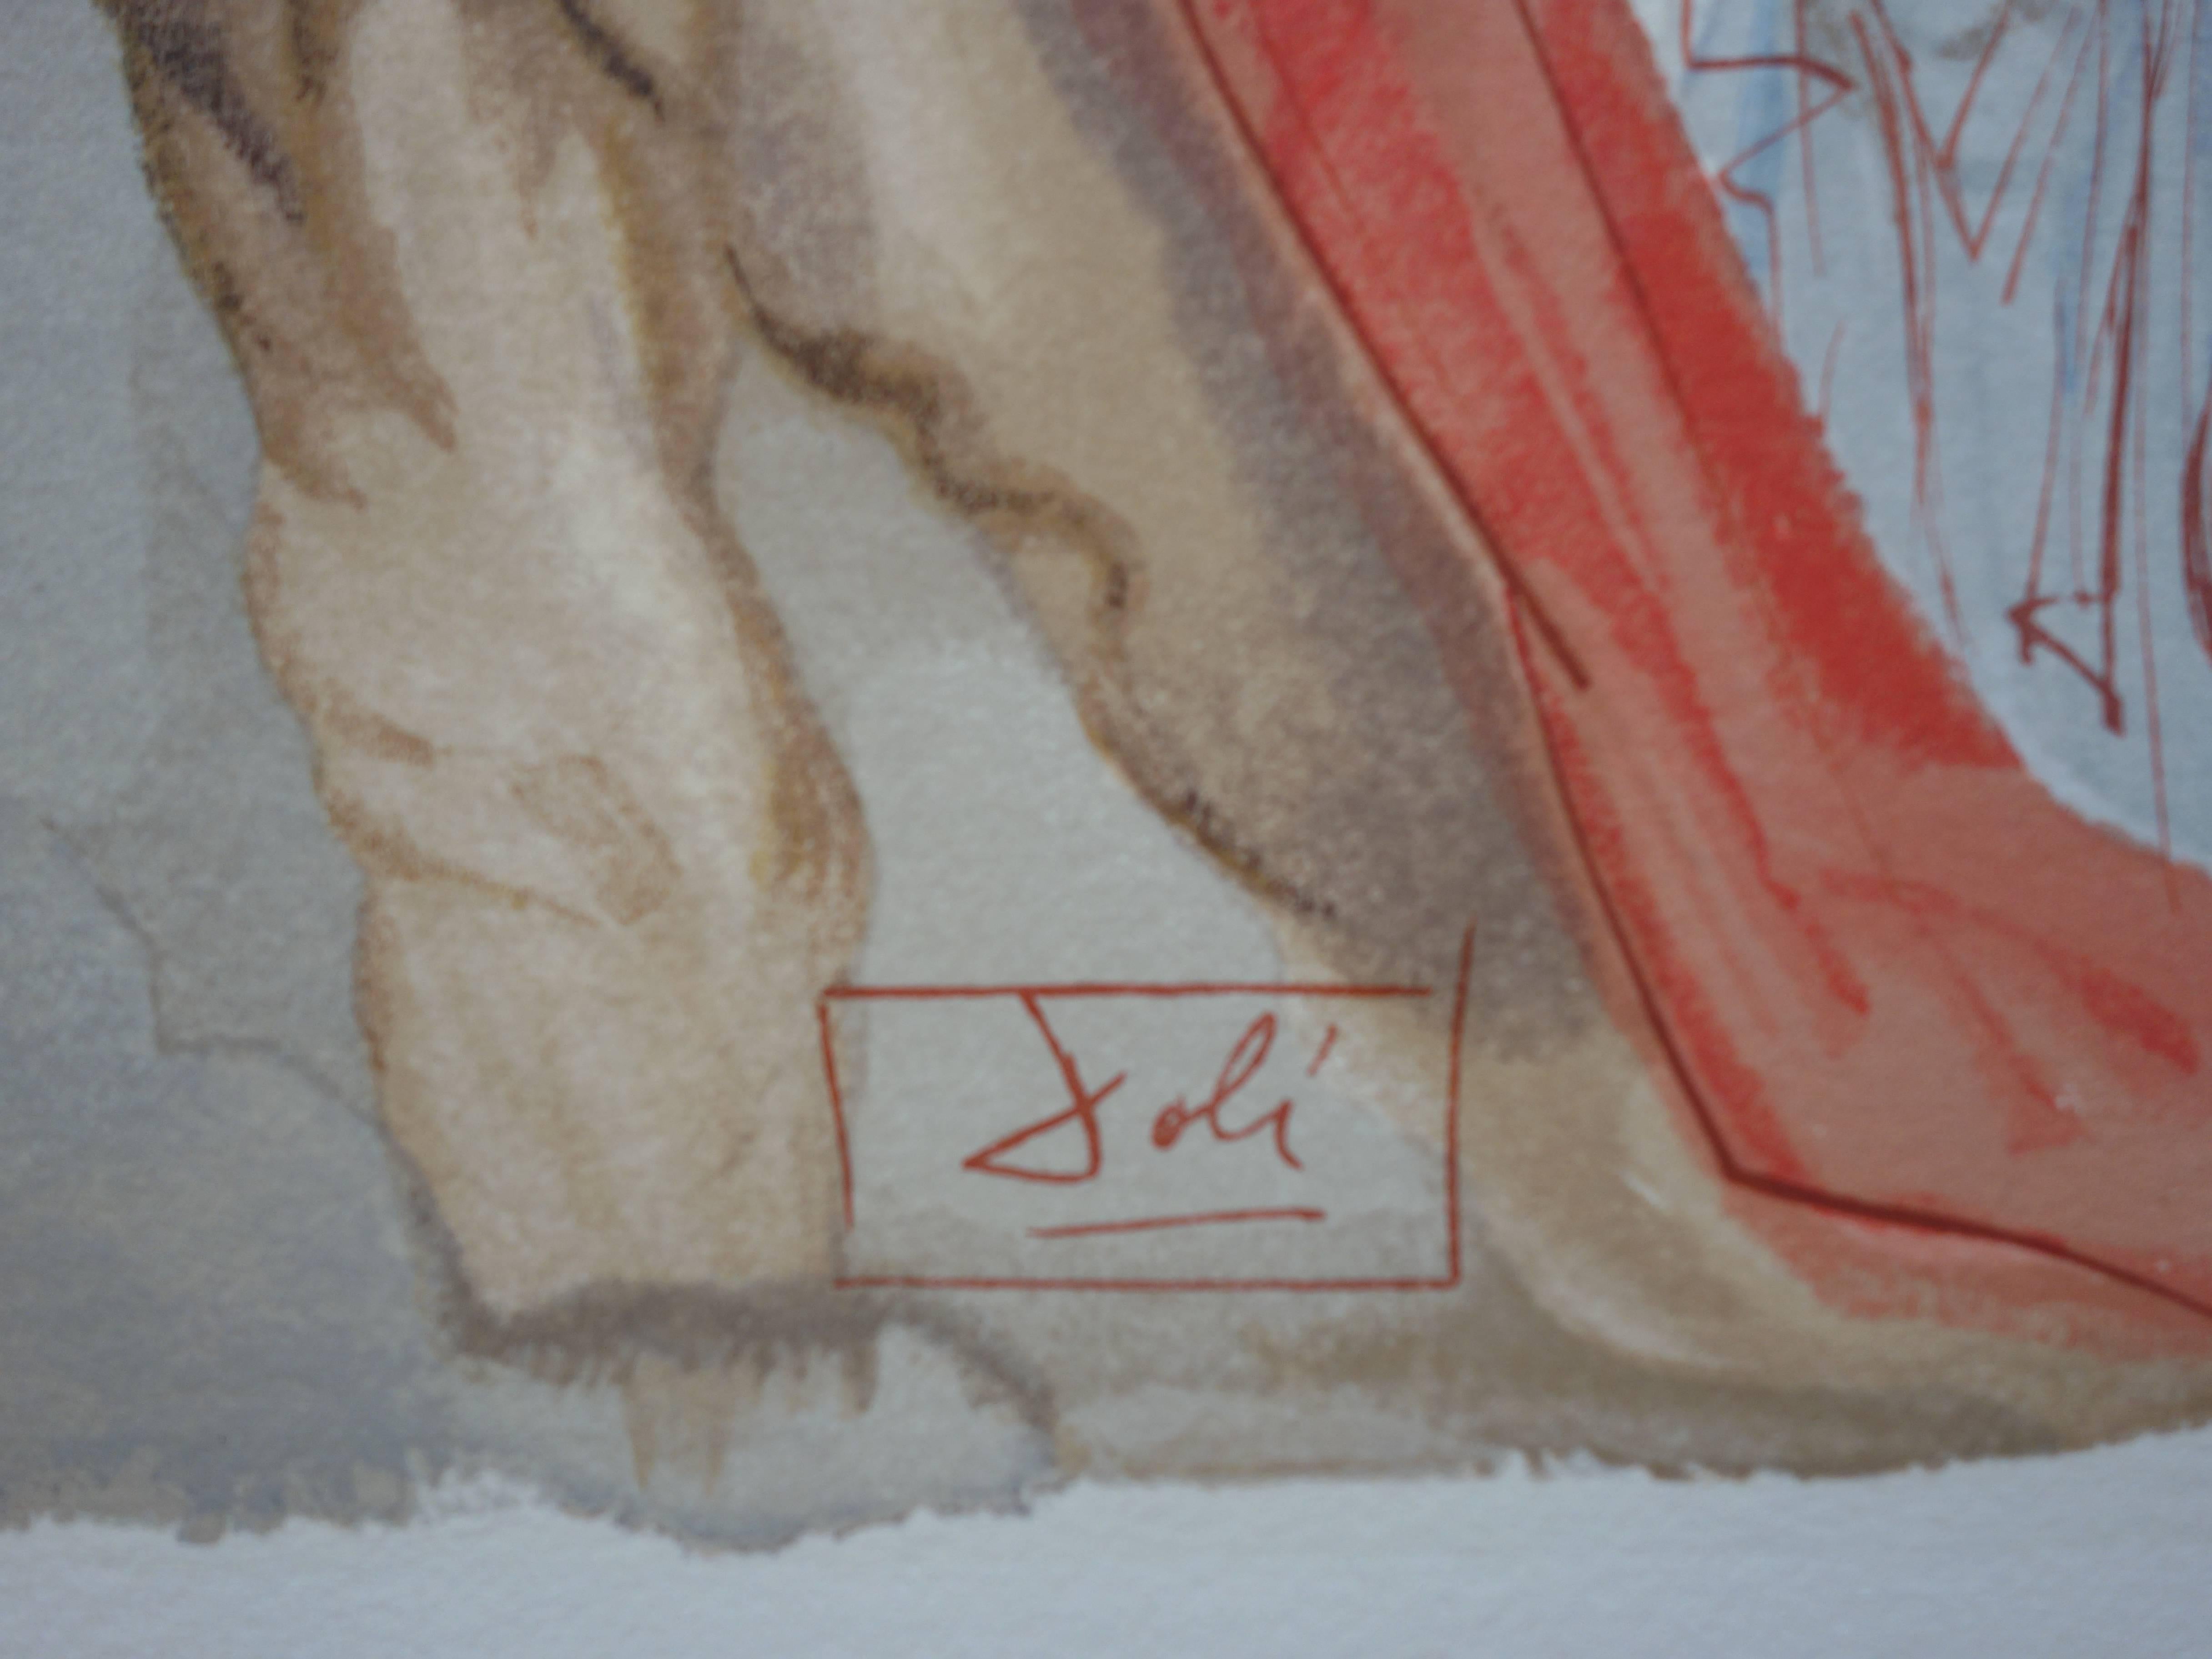 Purgatoire 5 - Les reproches de Virgile - Gravure sur bois en couleurs - 1963 - Print de Salvador Dalí